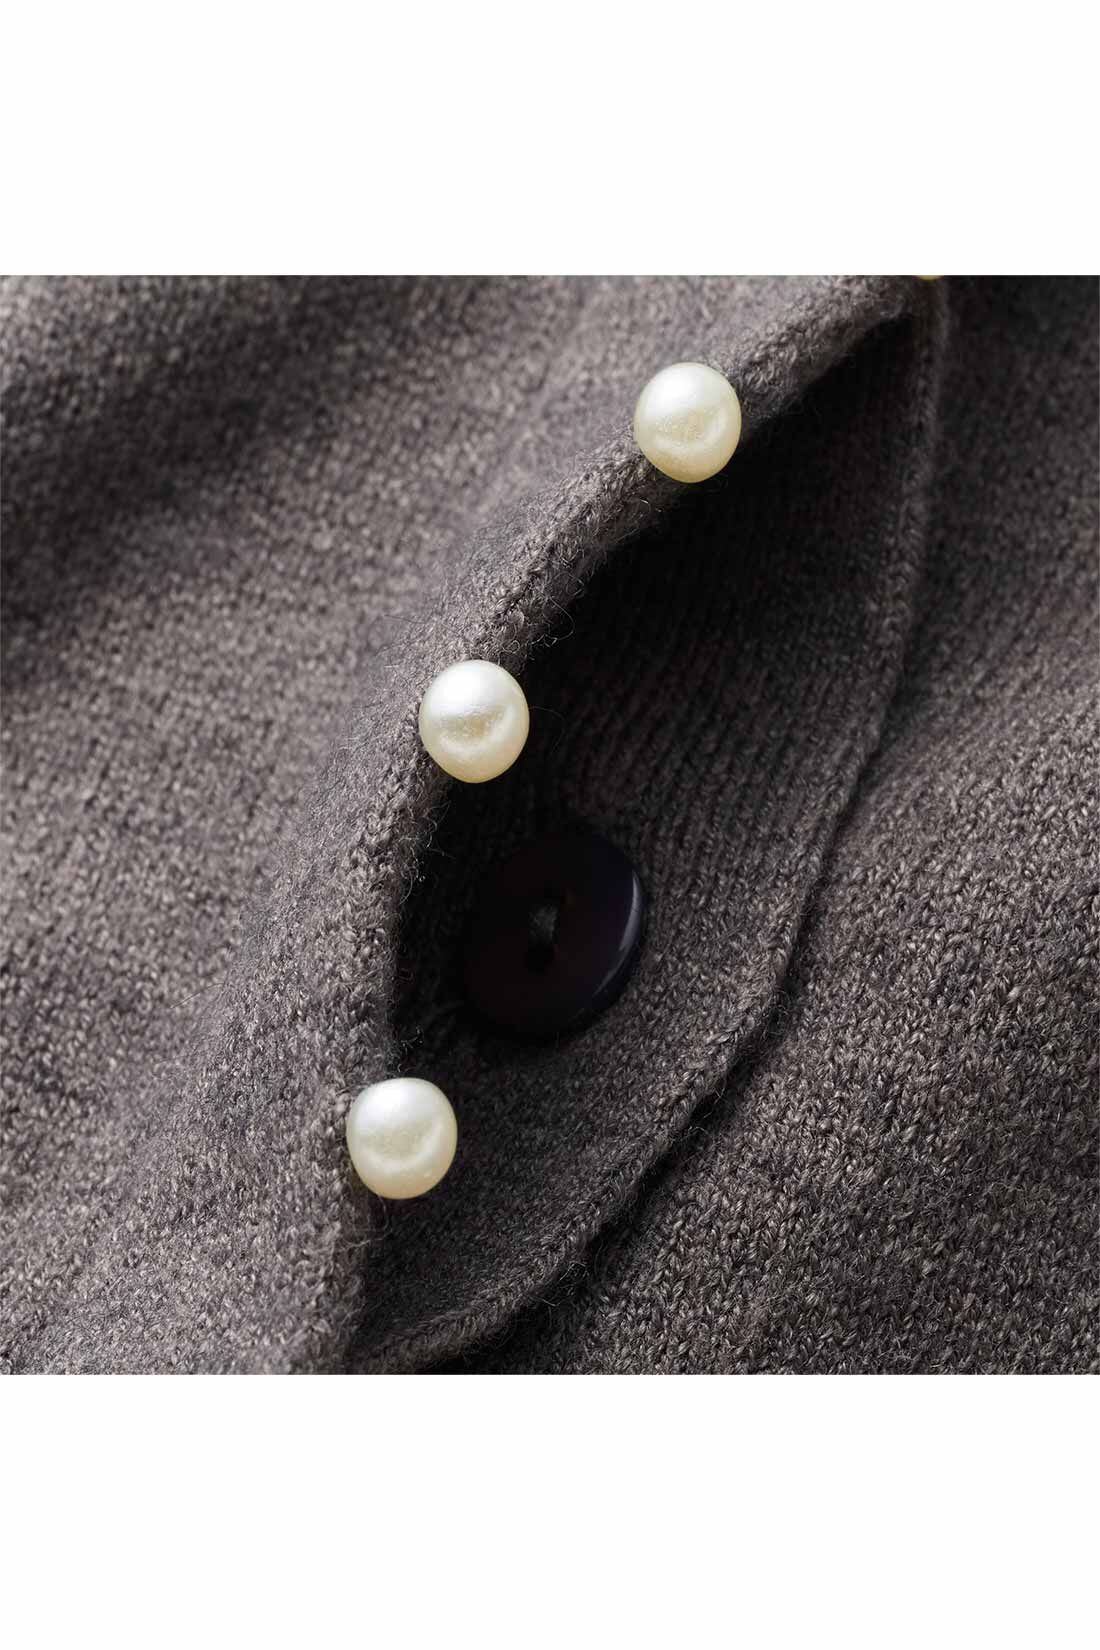 IEDIT[イディット]　アクセサリーみたいなミニパールが上品な 柄編み袖のカーディガン〈グレー〉|フロントボタンを隠した比翼仕立て。パールの飾りが引き立つデザインに。